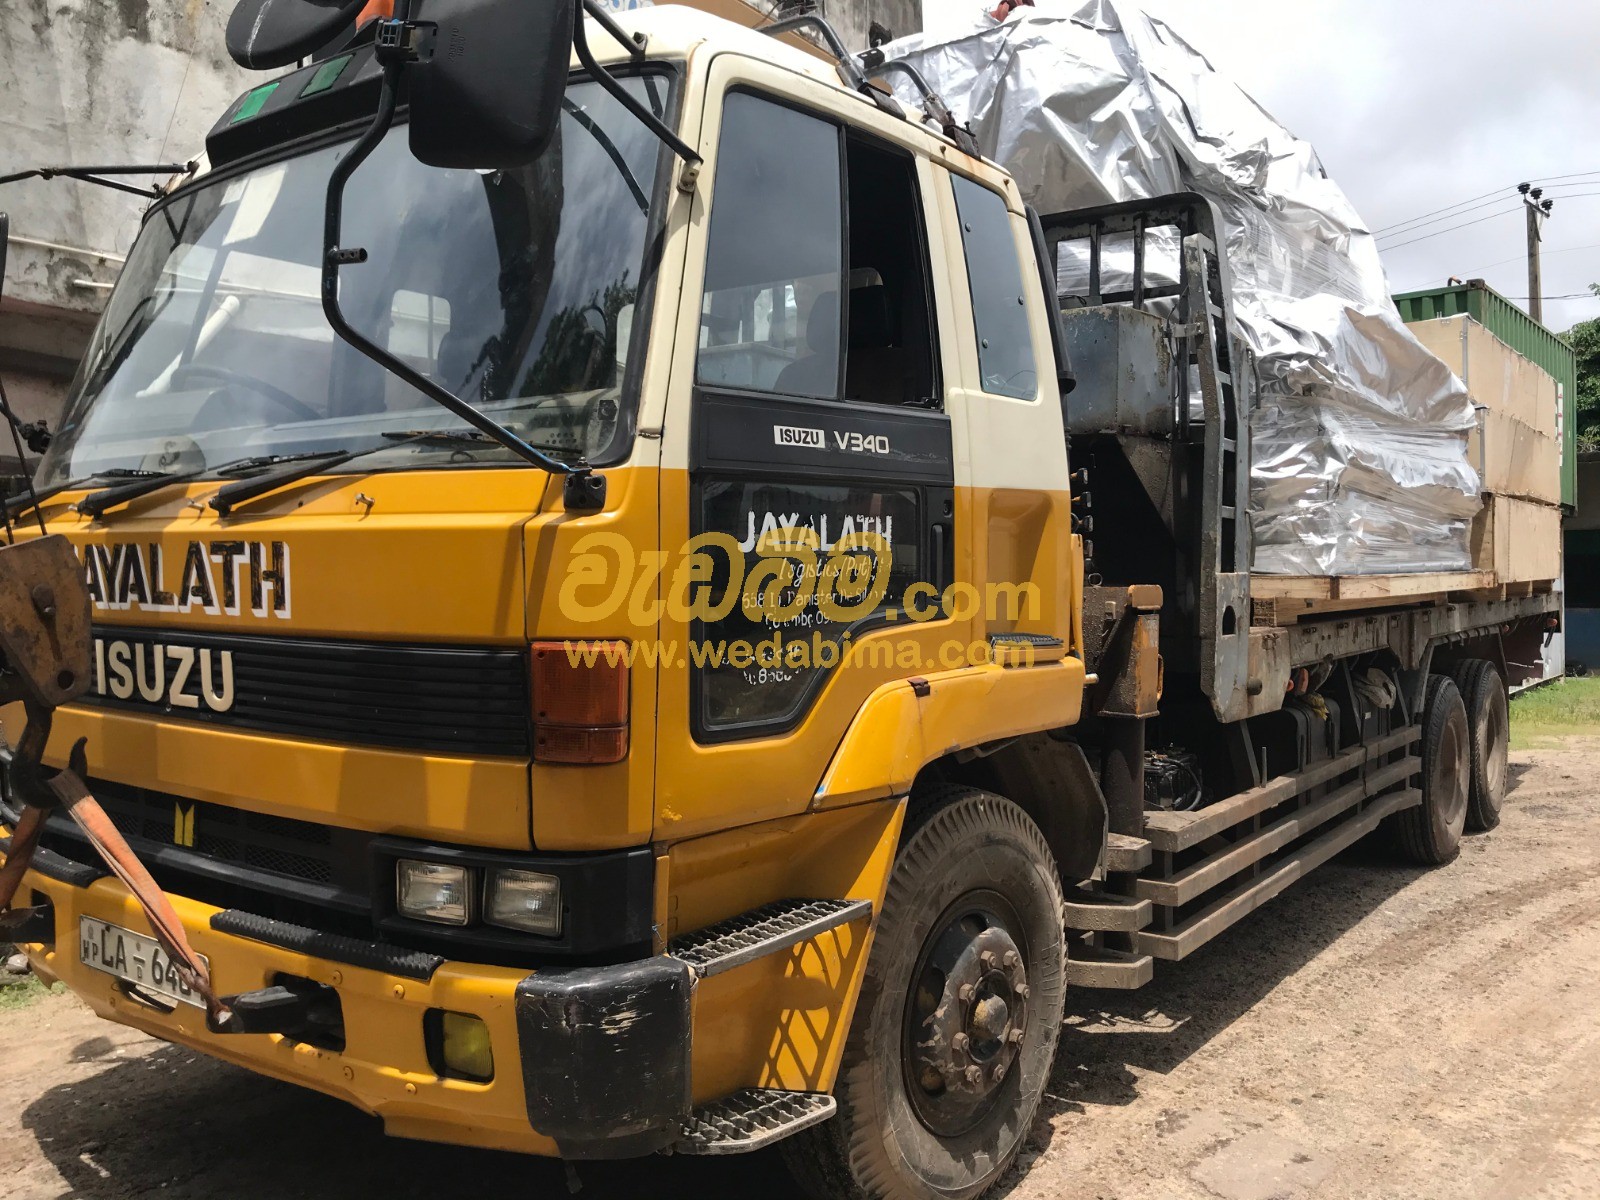 3.5 Ton Boom Truck for Hire in Sri Lanka